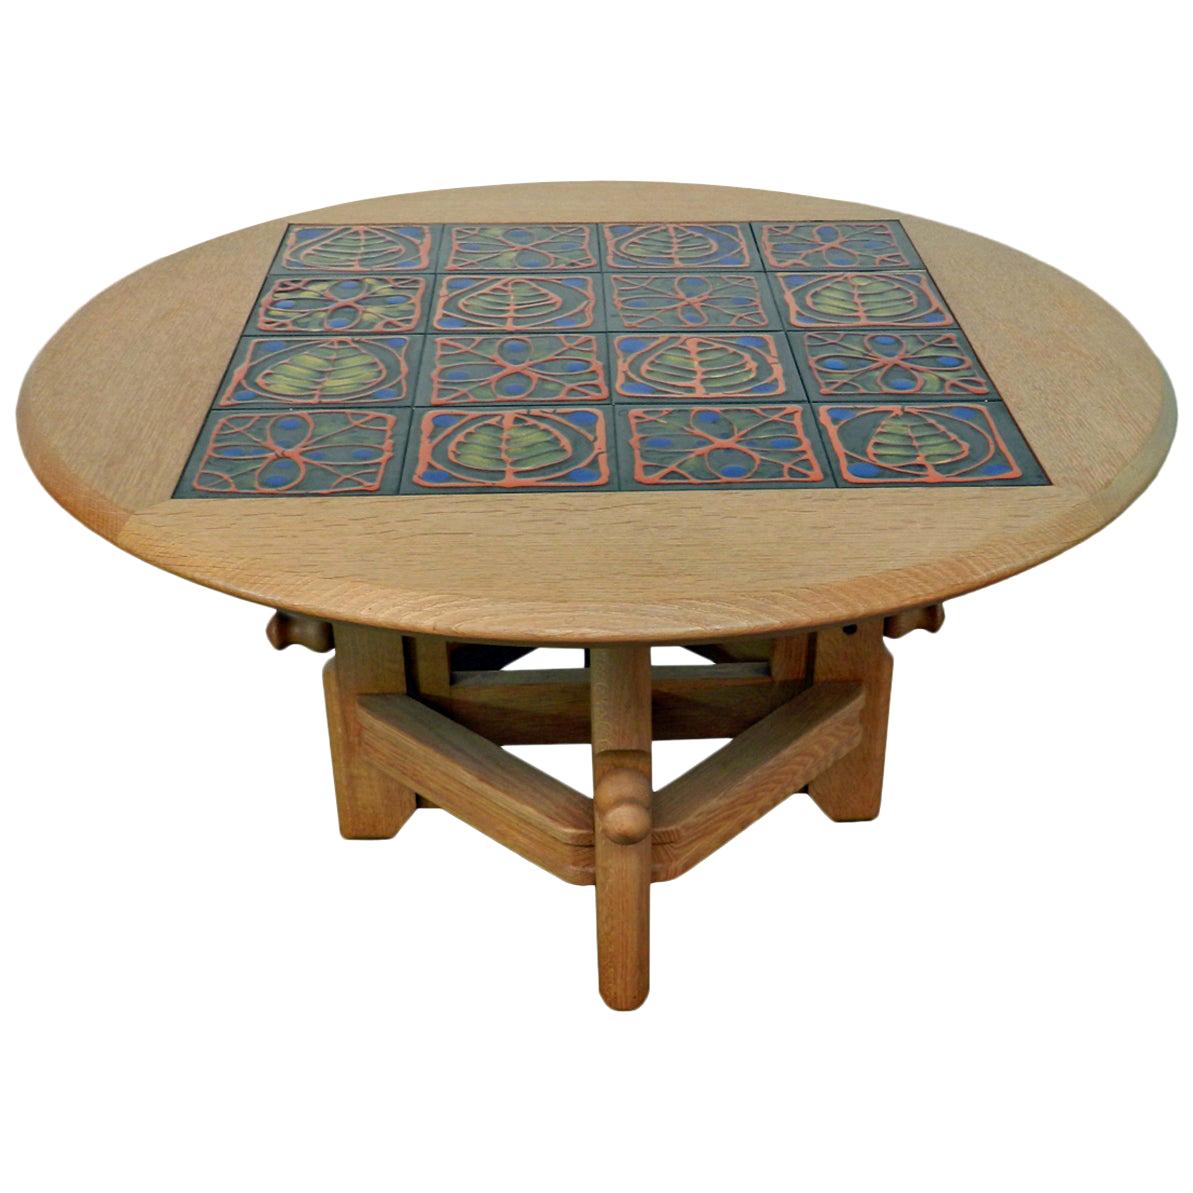 Table réglable en chêne et céramique "Ladislas" de Guillerme & Chambron, Votre Maison